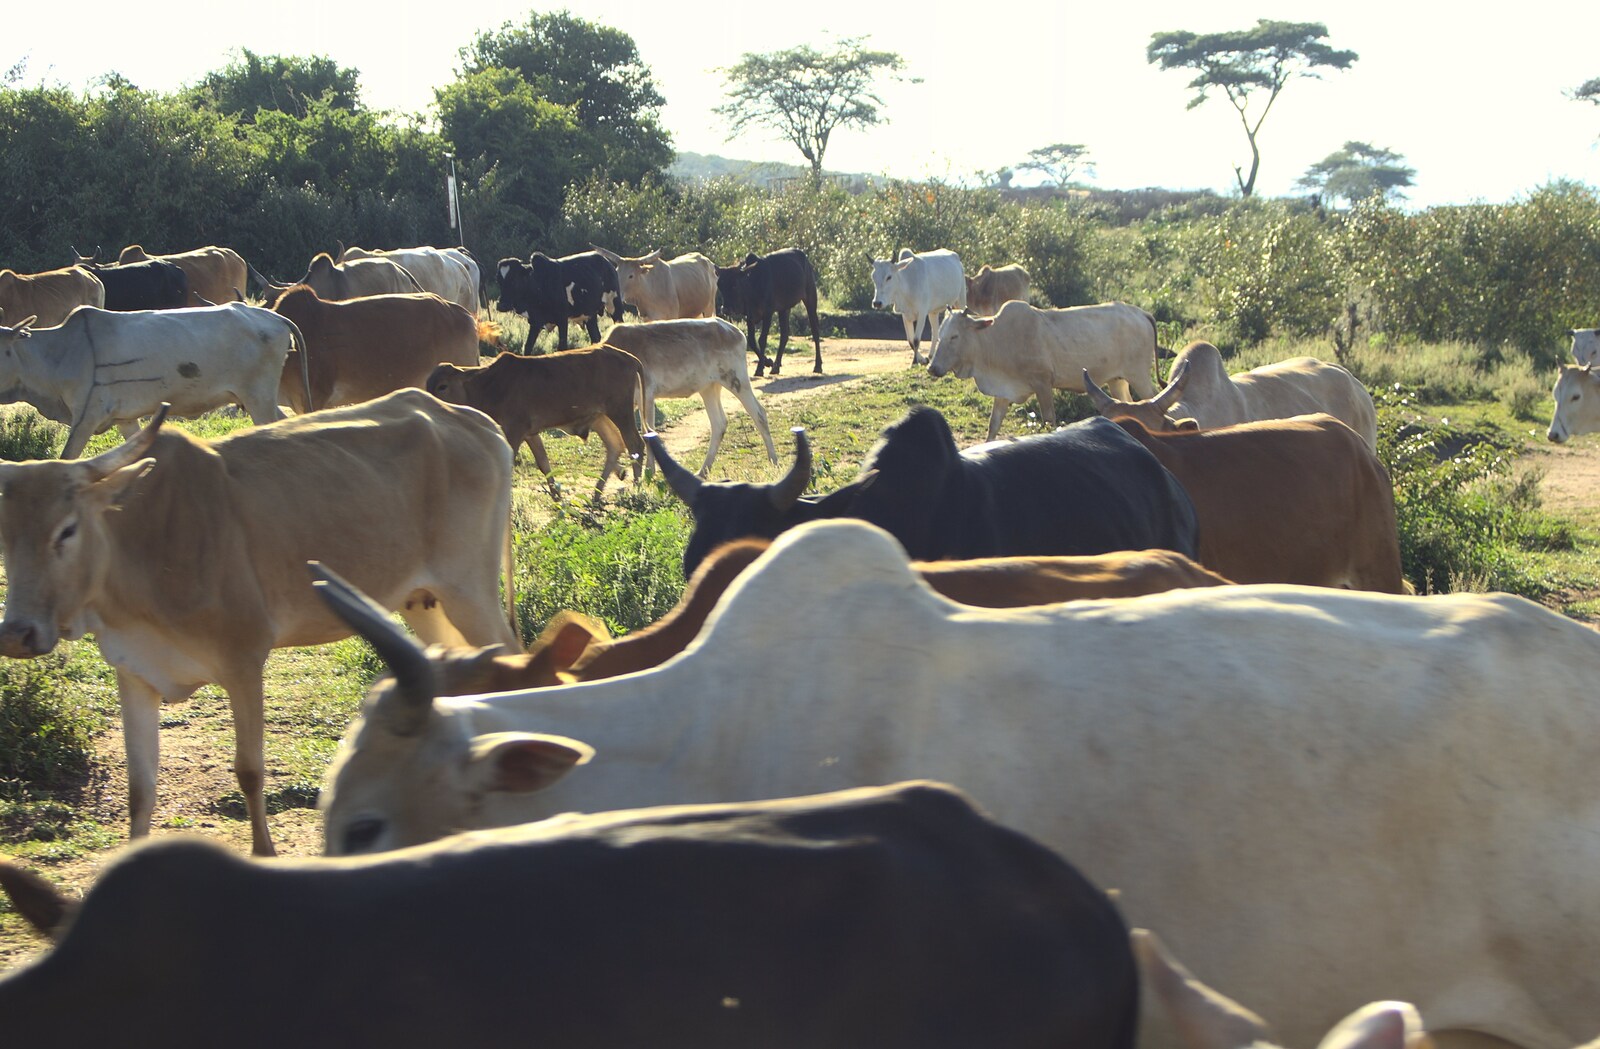 Maasai Mara Safari and a Maasai Village, Ololaimutia, Kenya - 5th November 2010: Cows are being herded